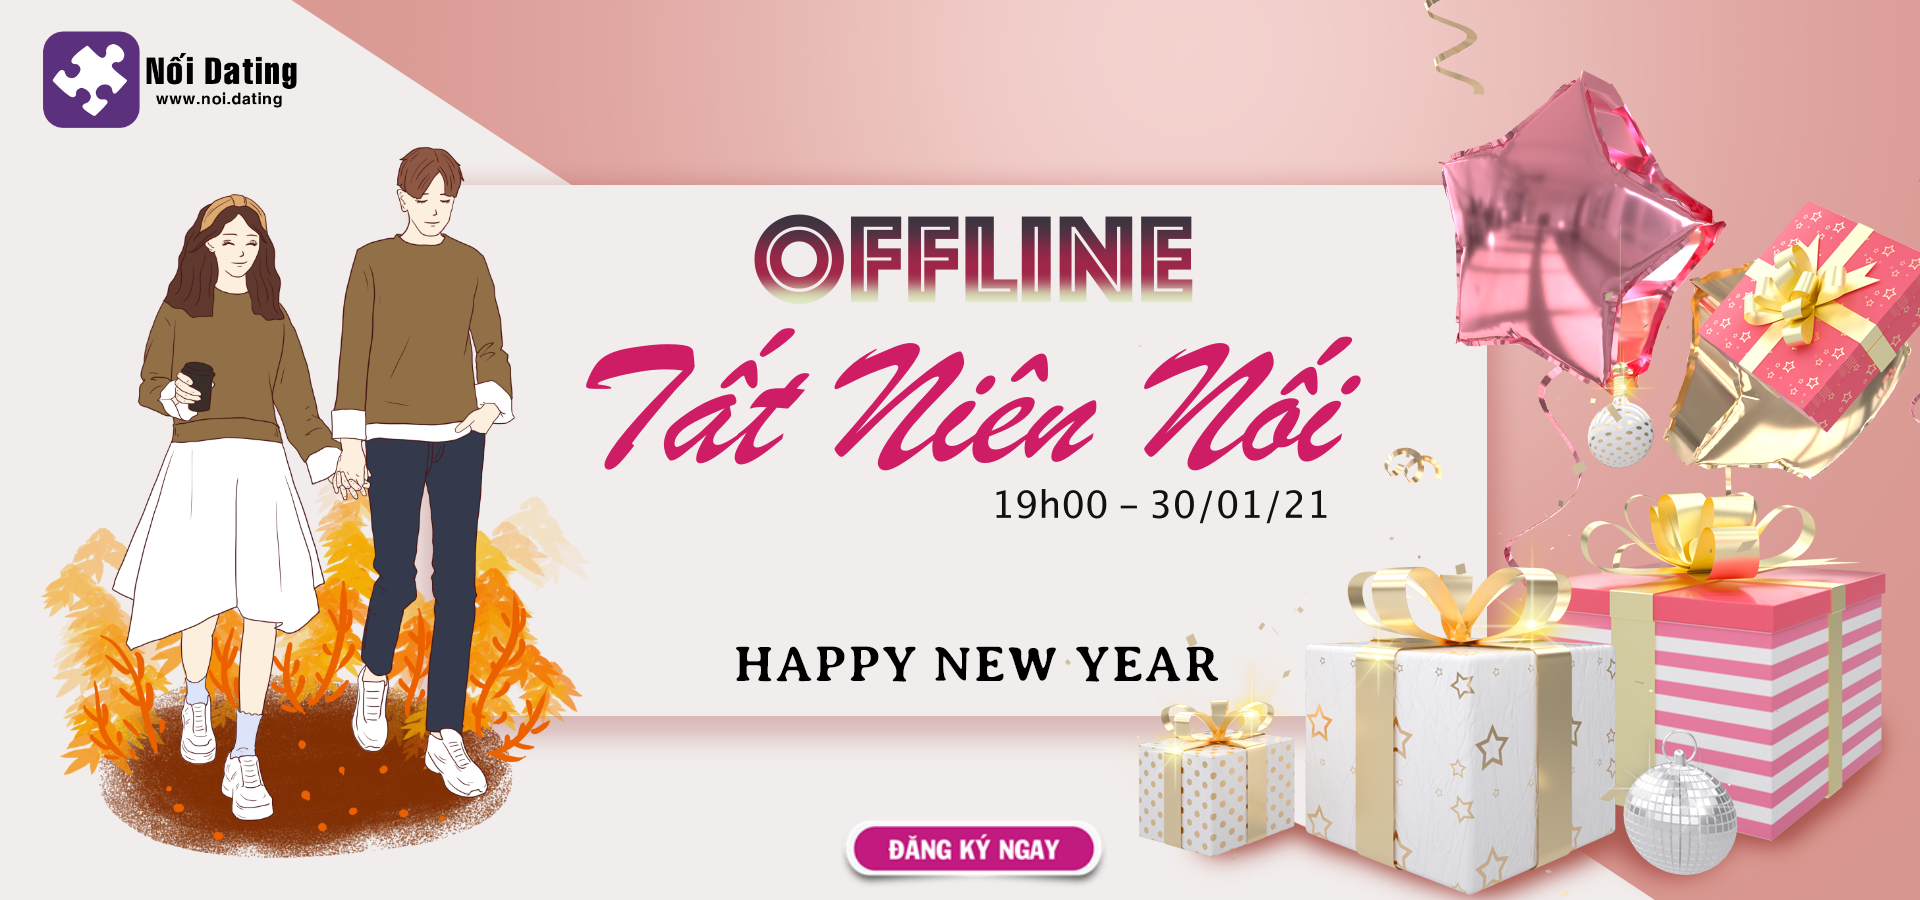 OFFLINE - Tất Niên Nối (30/01/21) - Up danh sách